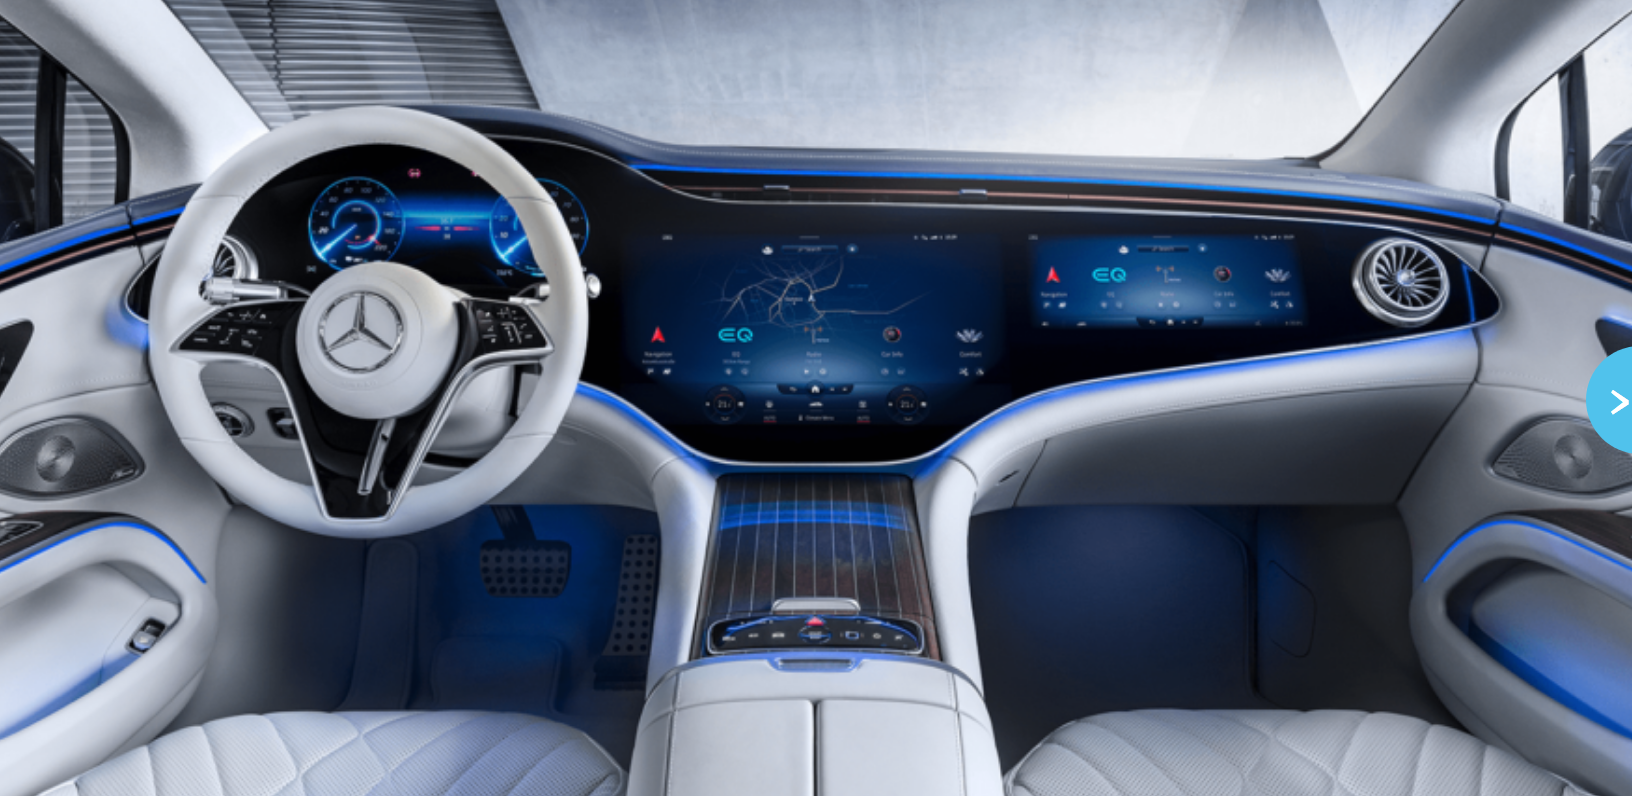 Mercedes EQS has ‘hyperscreen’ dashboard